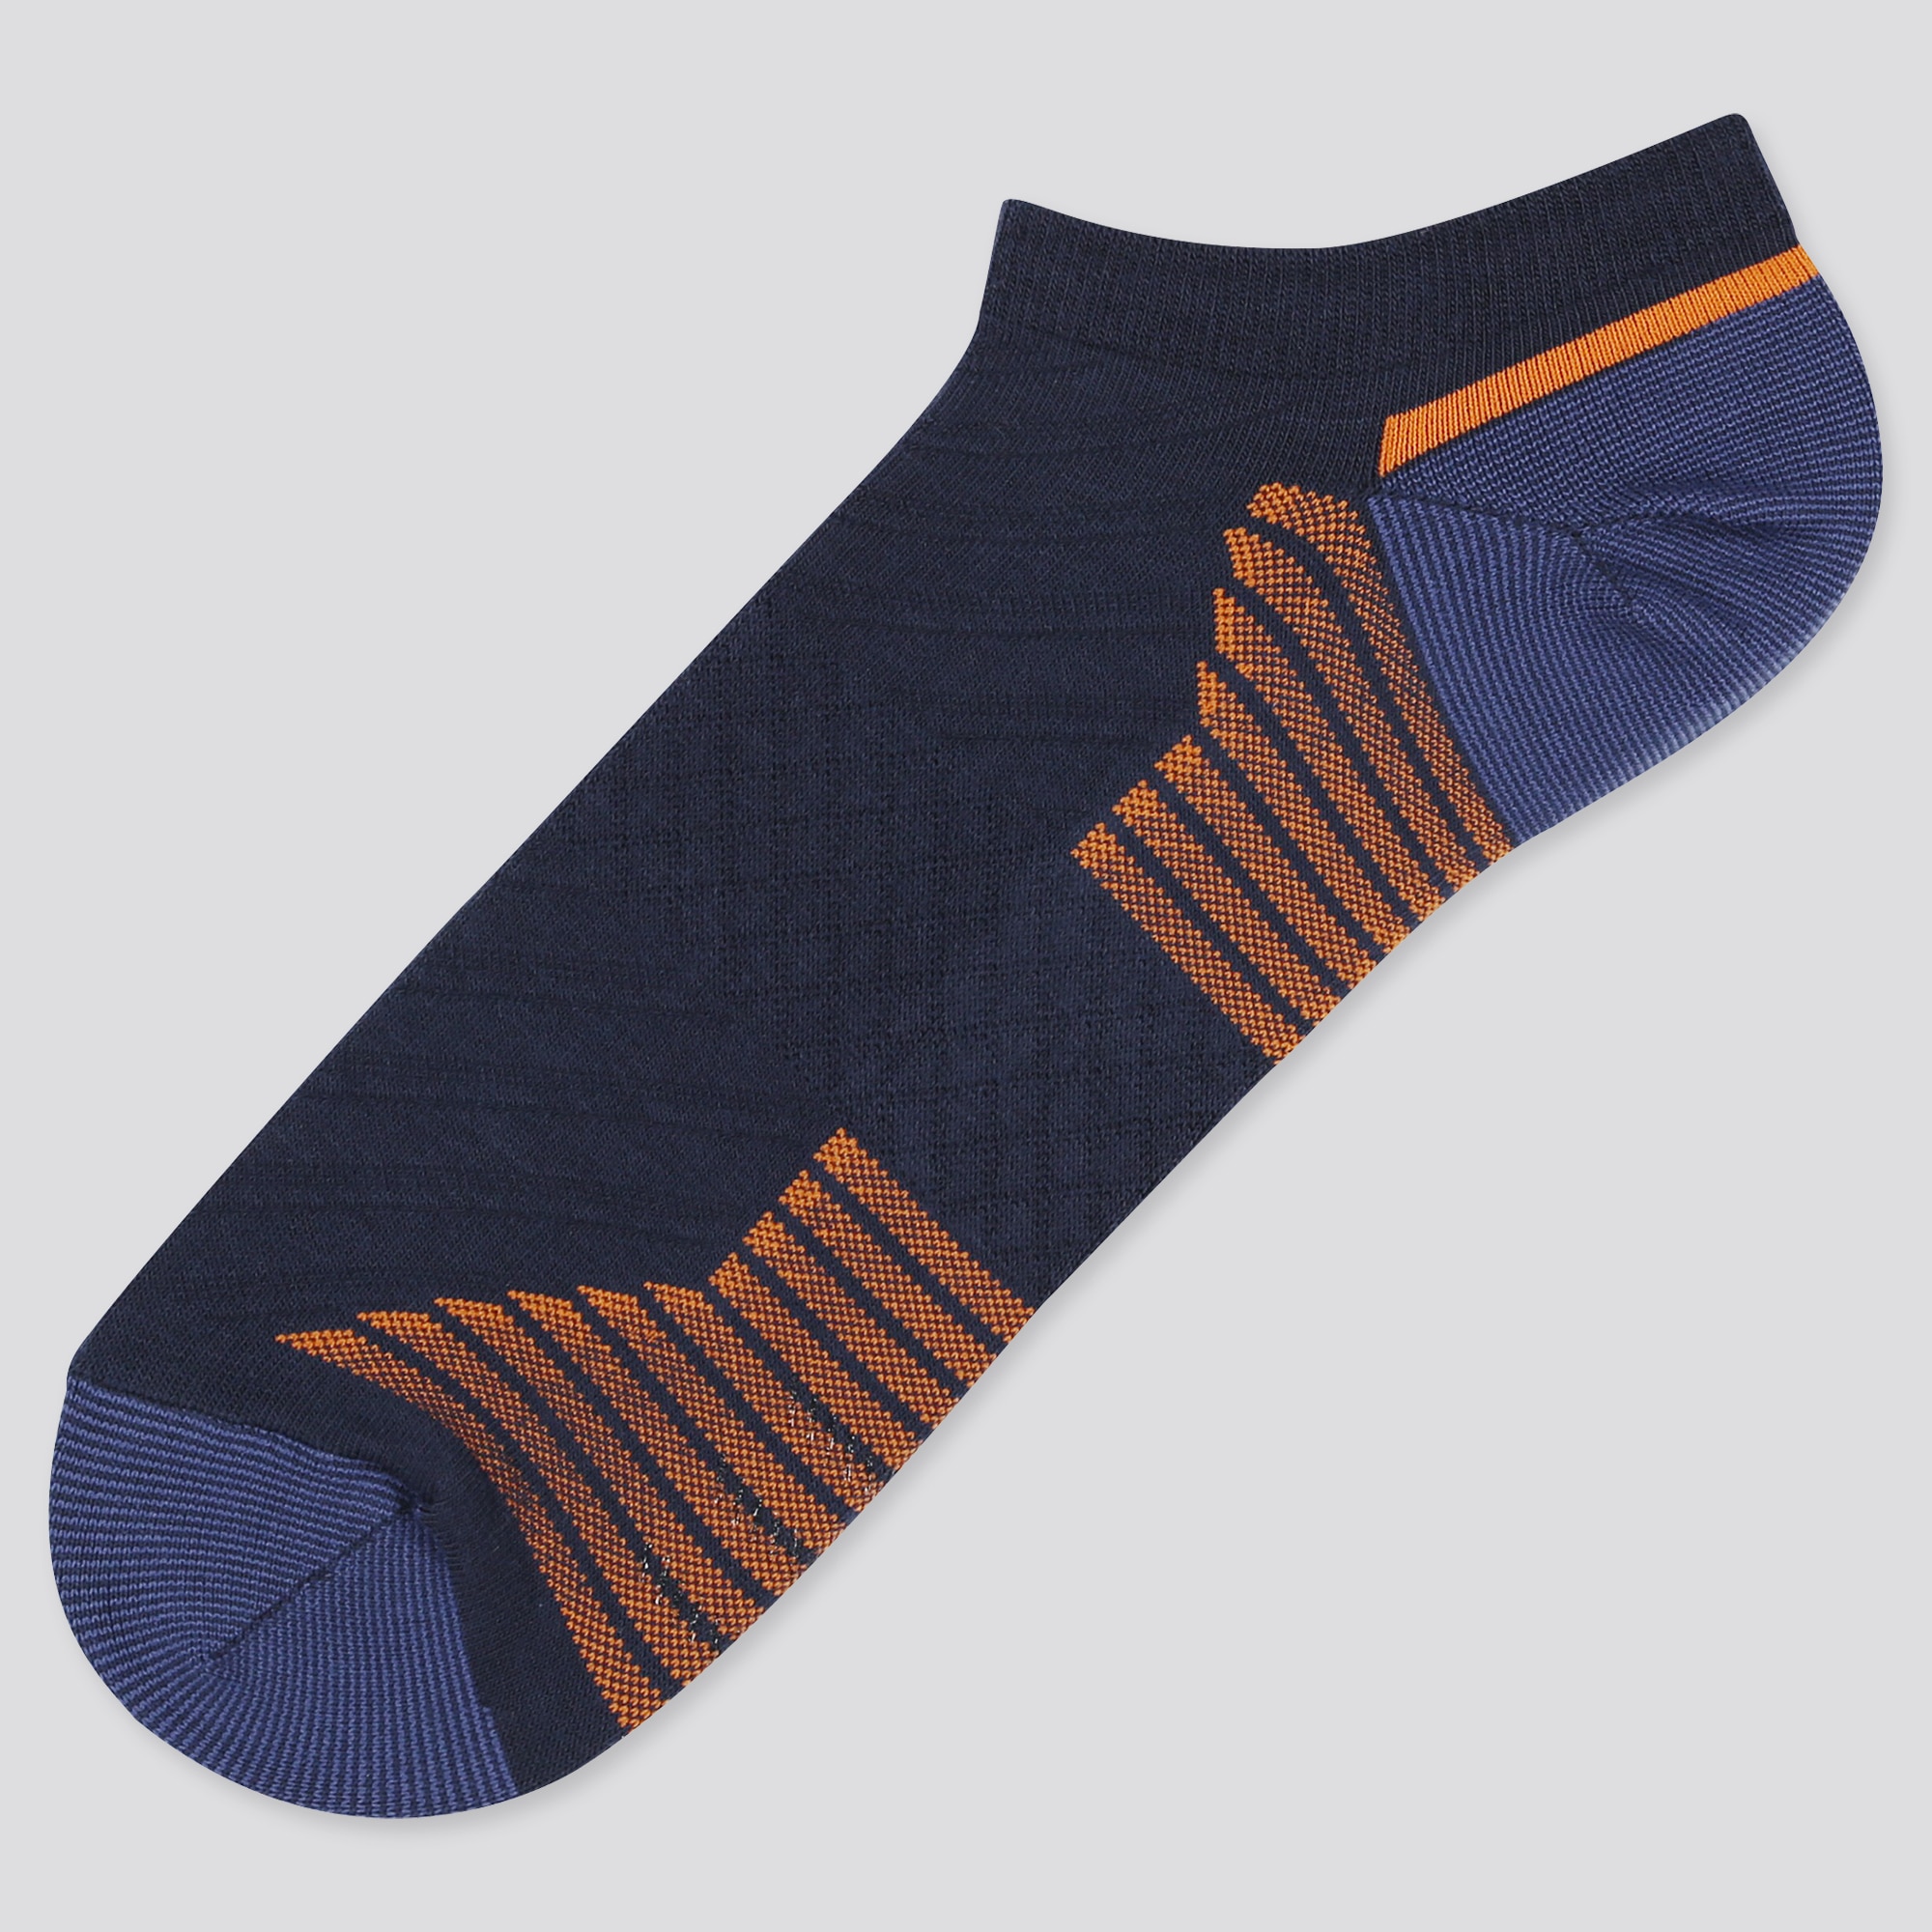 navy sports socks